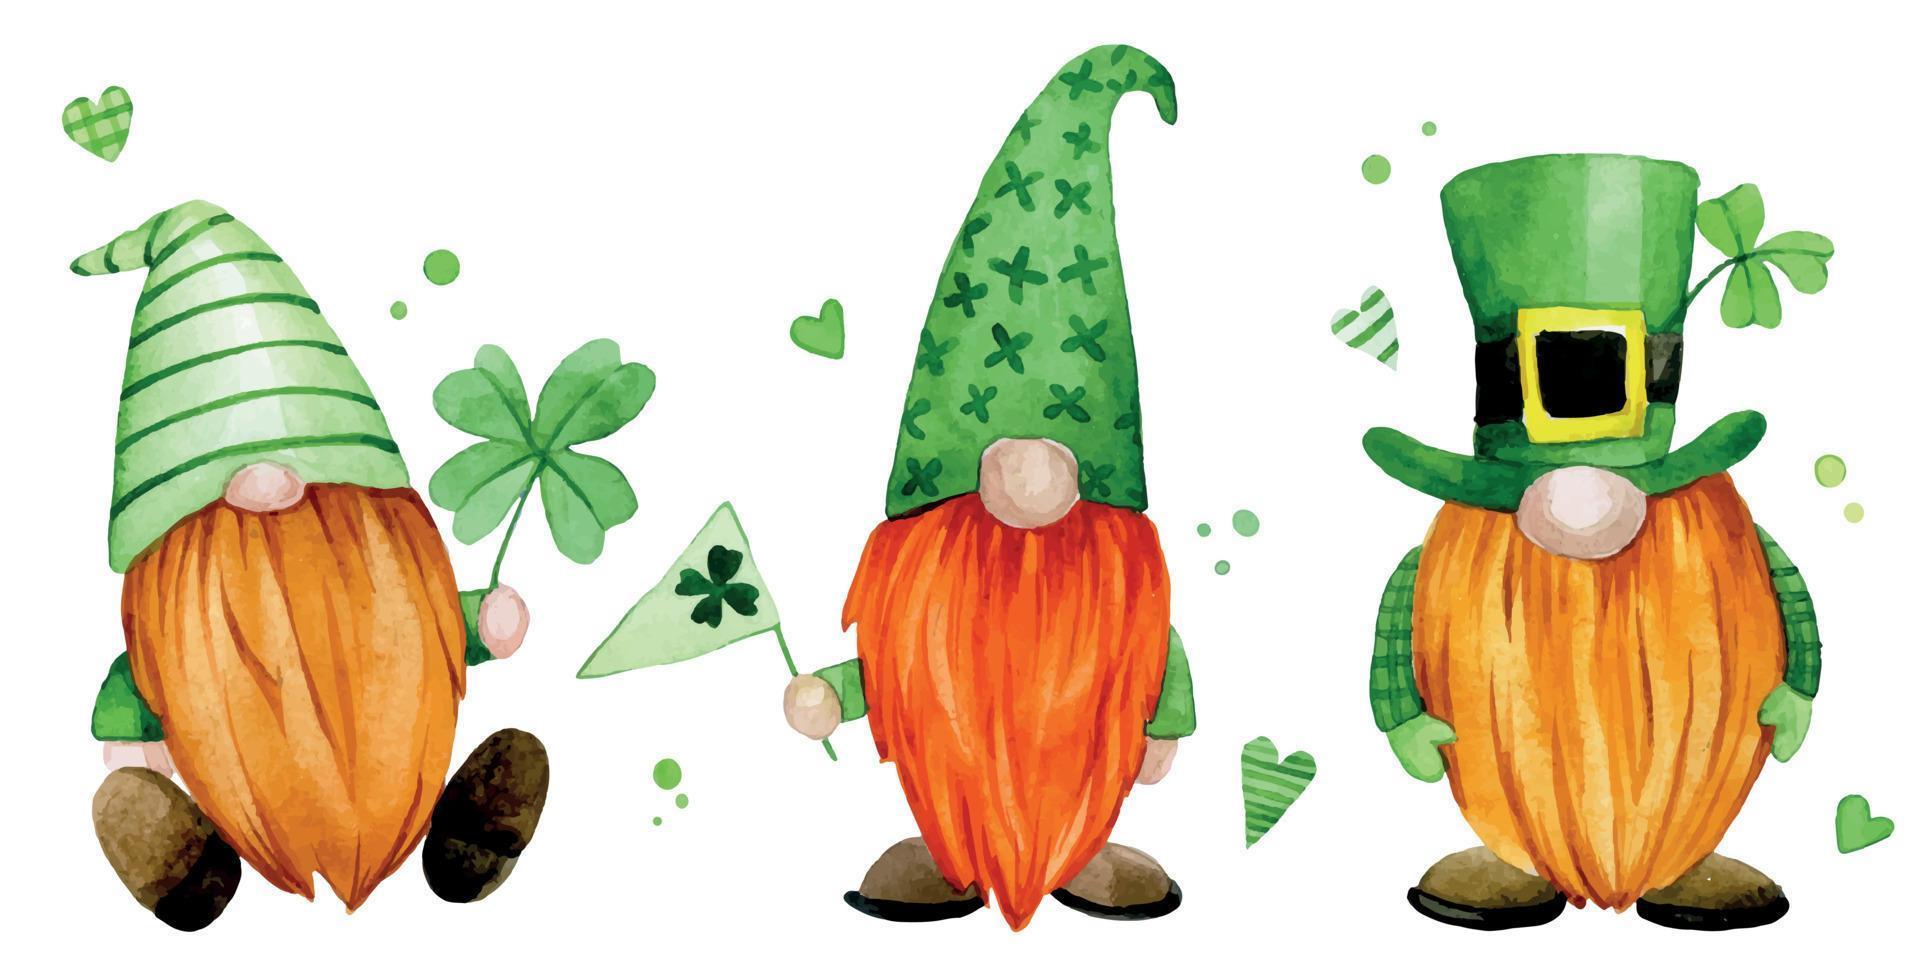 Aquarellzeichnung. Set für den St. Patrick's Day. süße Zwerge, Kobolde in grüner Kleidung mit einem vierblättrigen Kleeblatt. Clipart-Zeichen. vektor